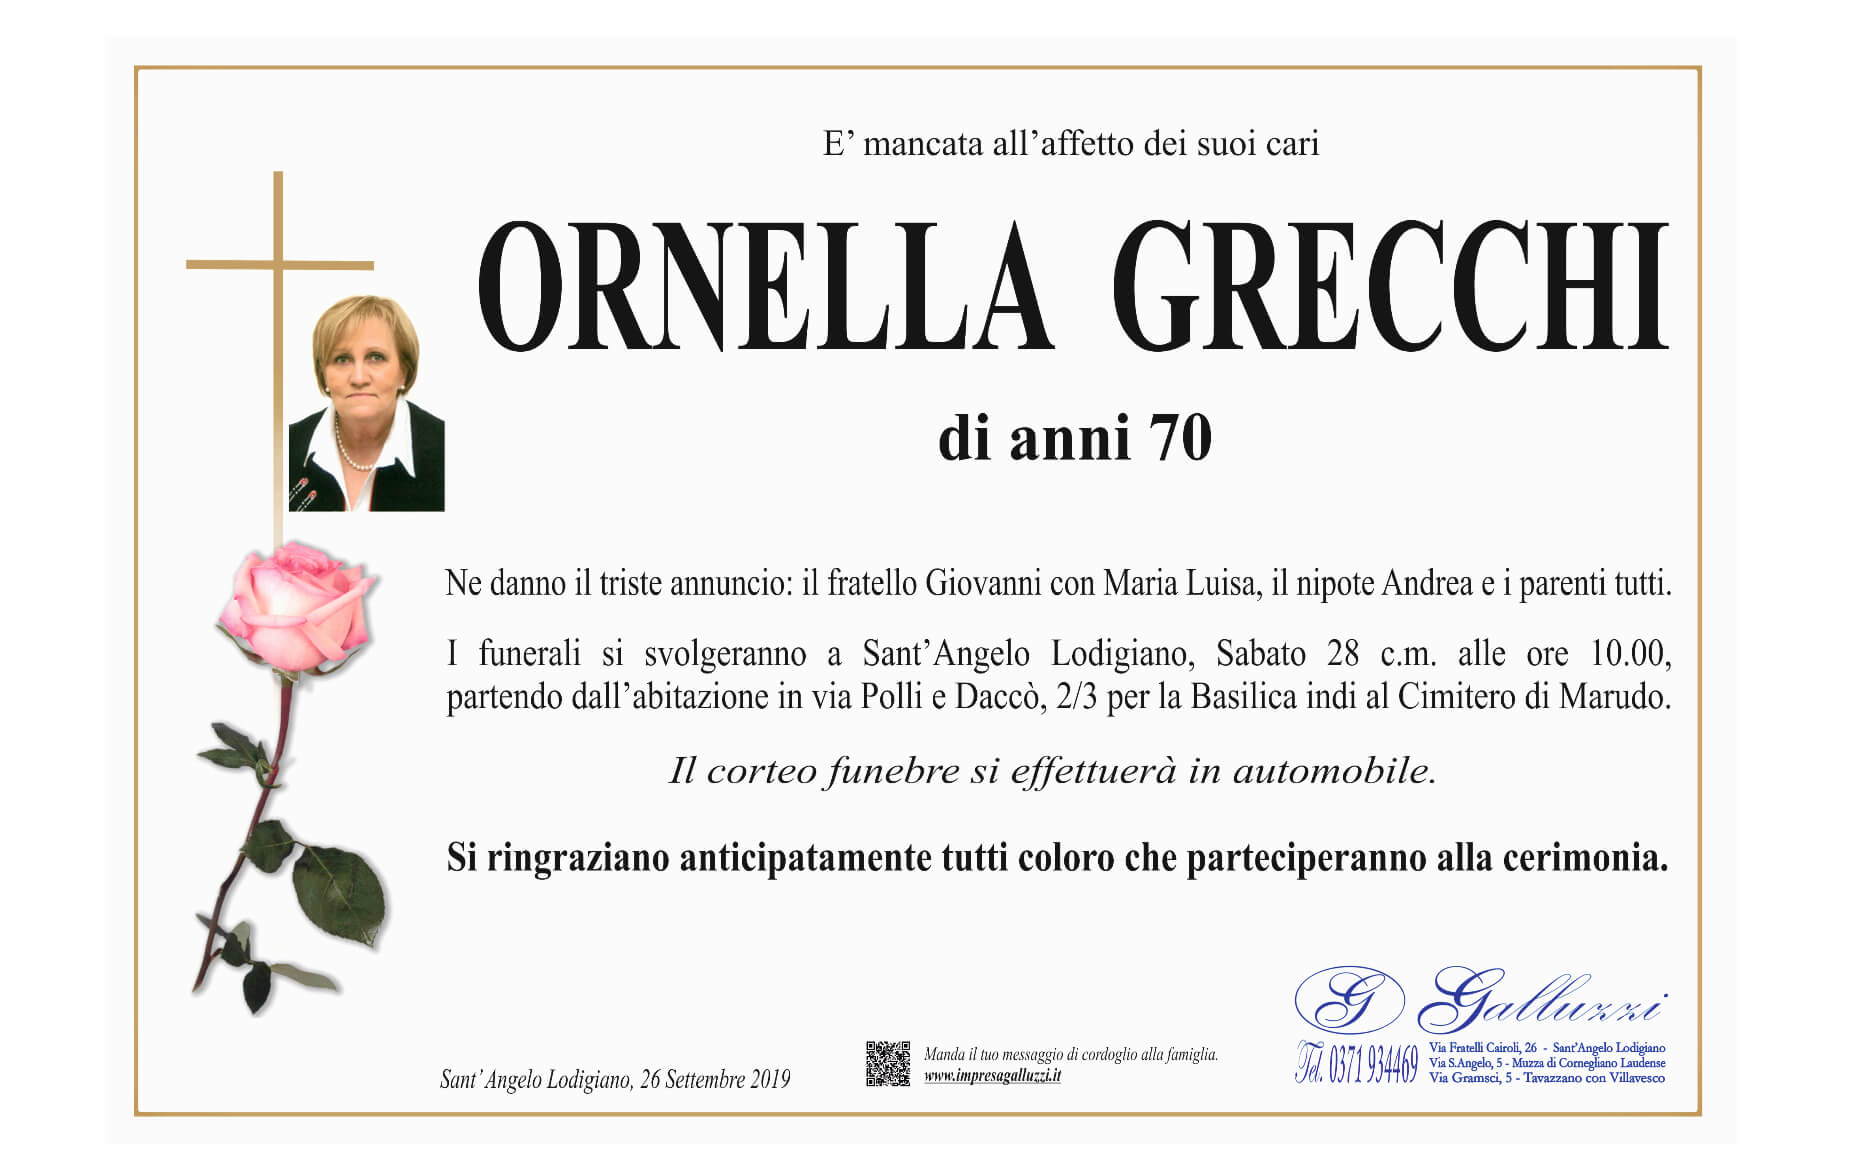 Ornella Grecchi